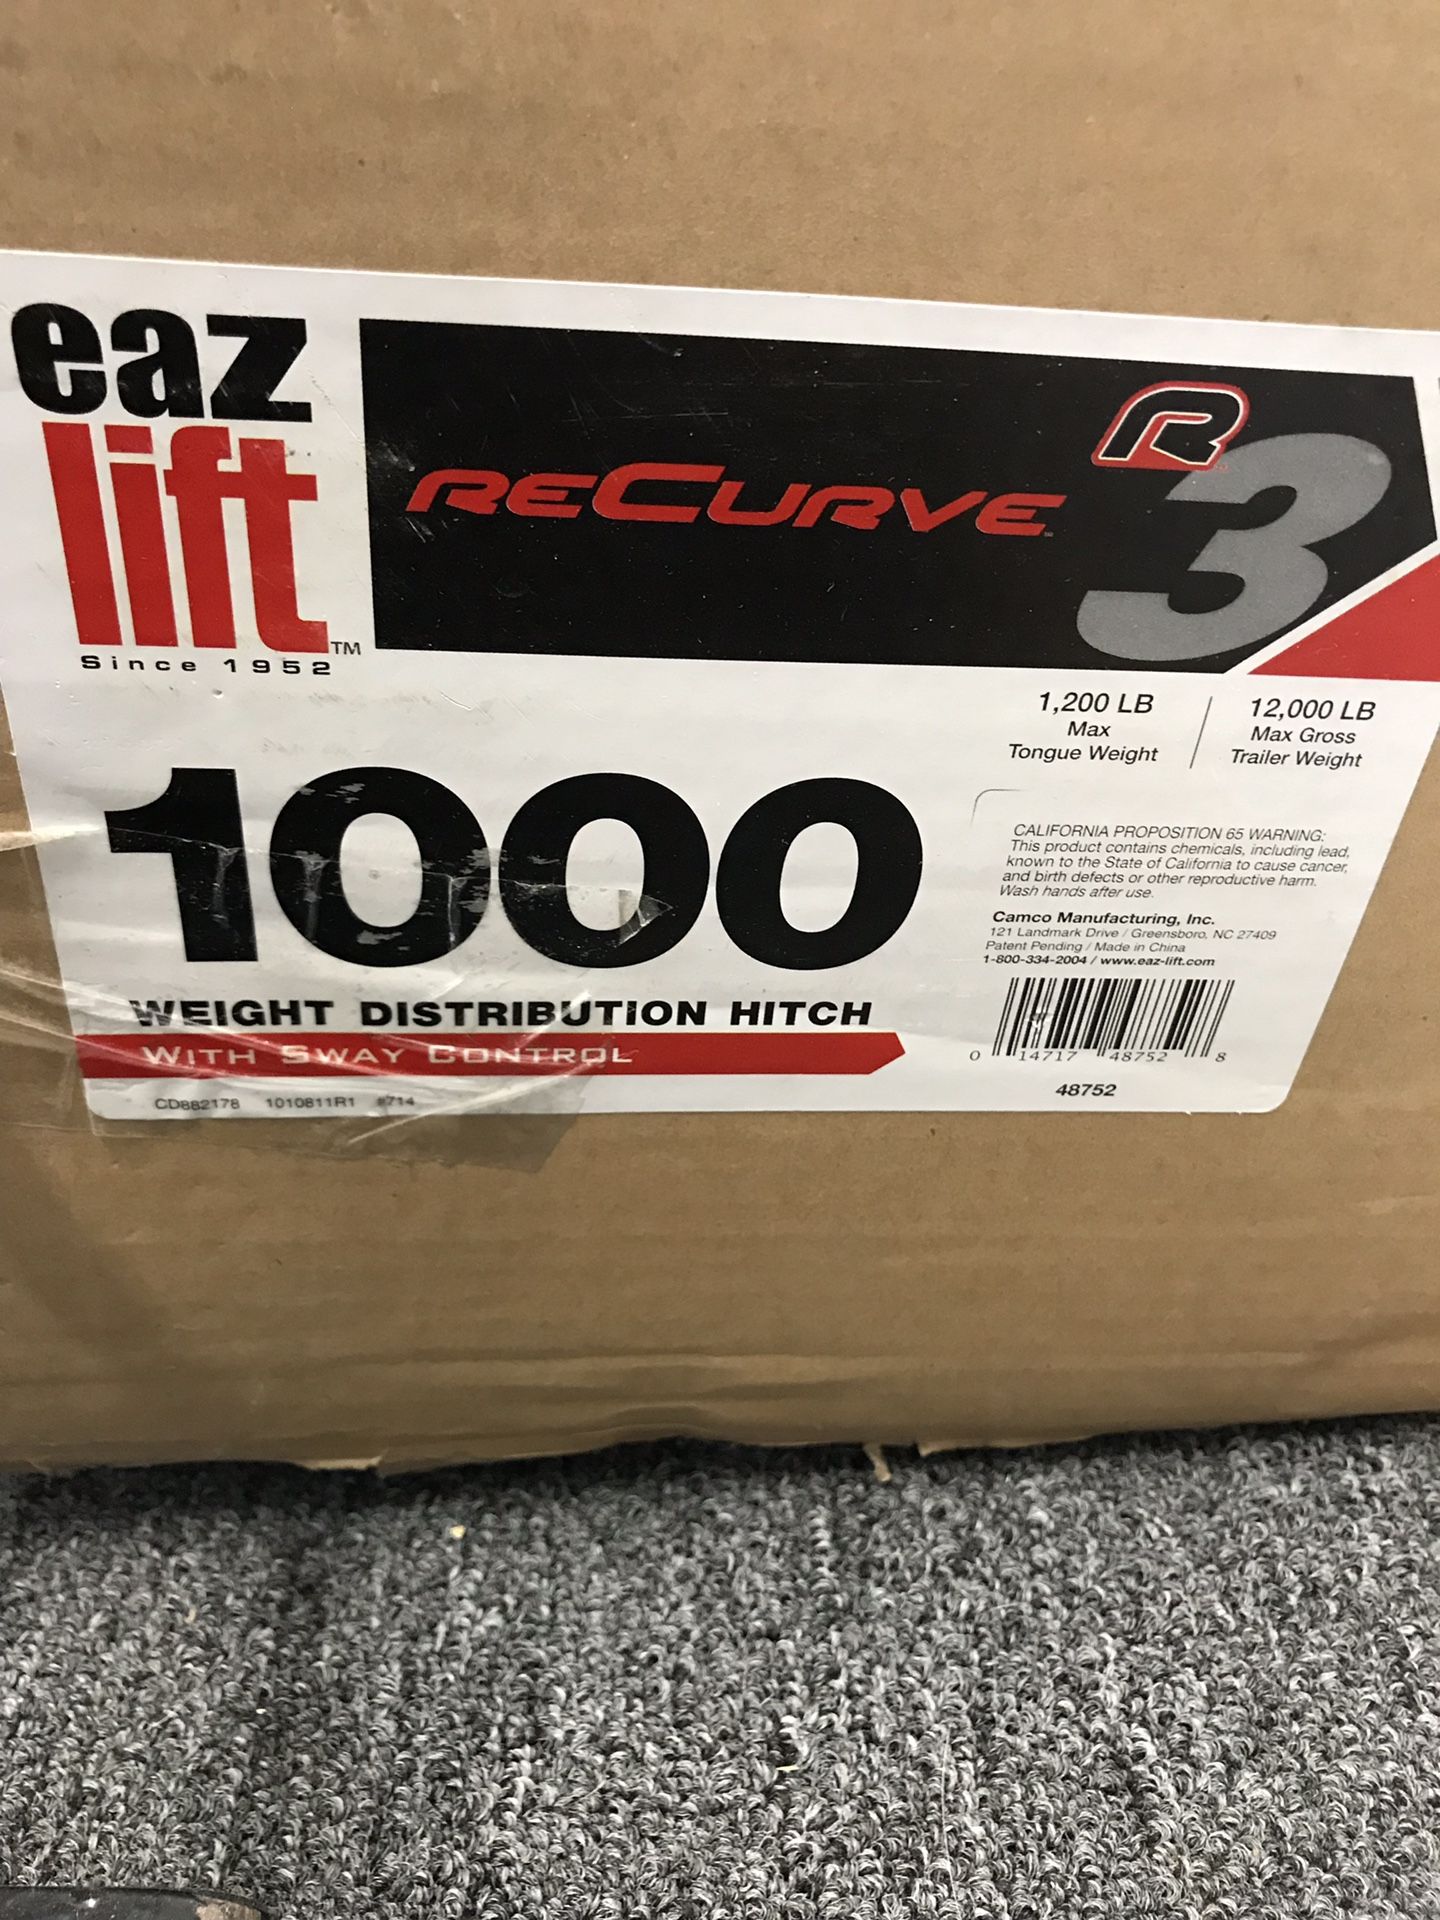 Eaz-lift recurve 1000 lb trailer hitch